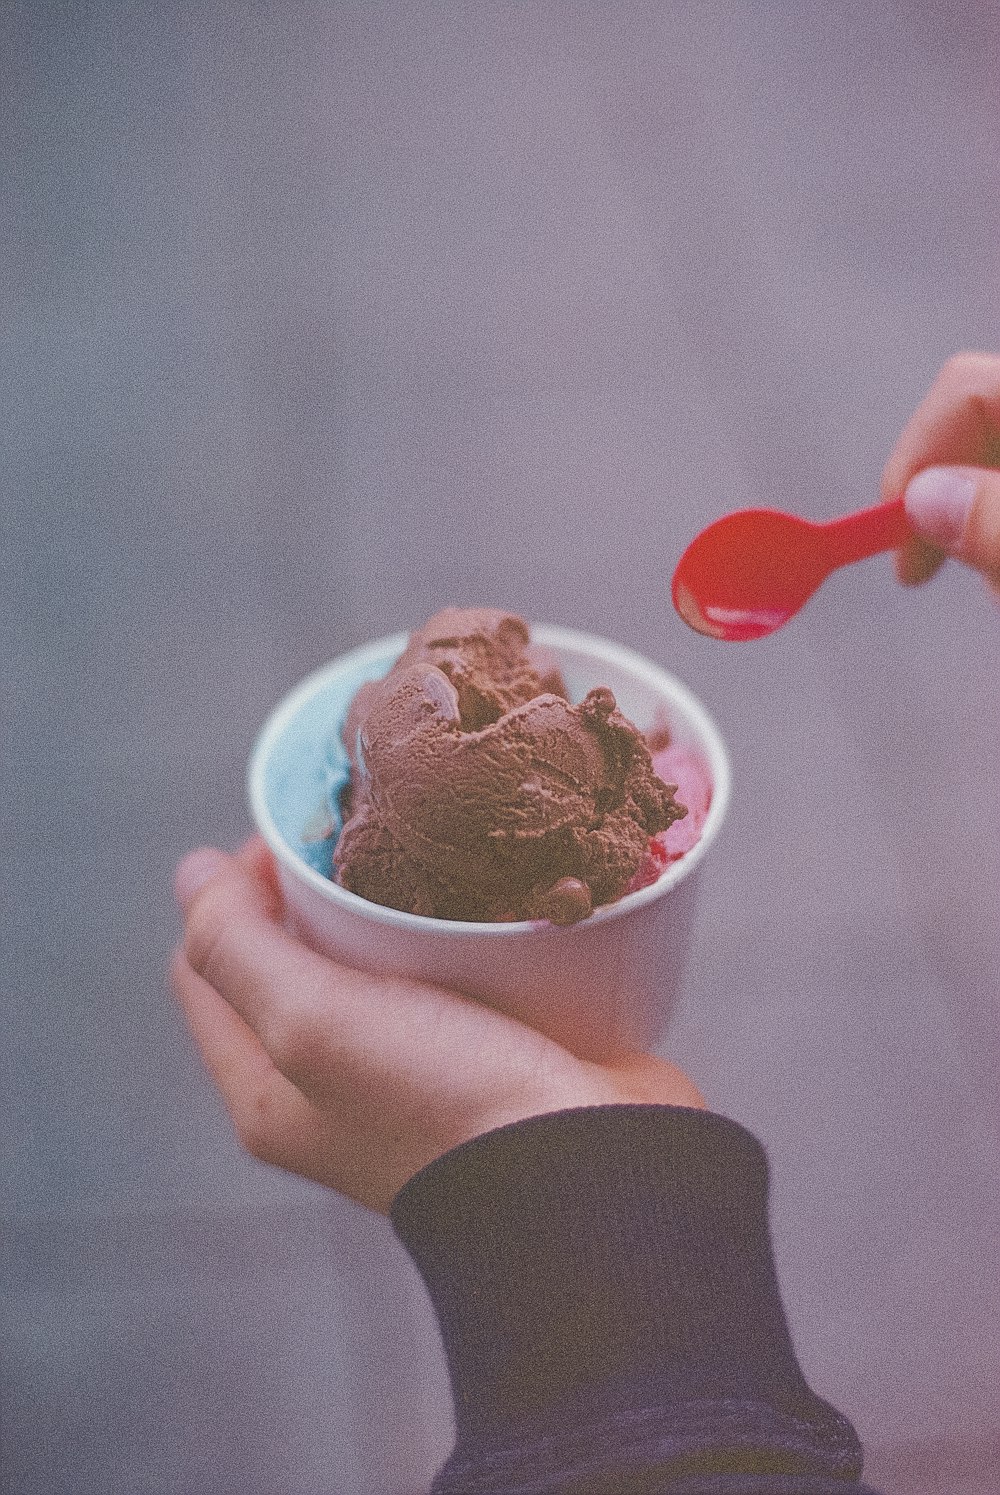 persona sosteniendo helado con cuchara roja